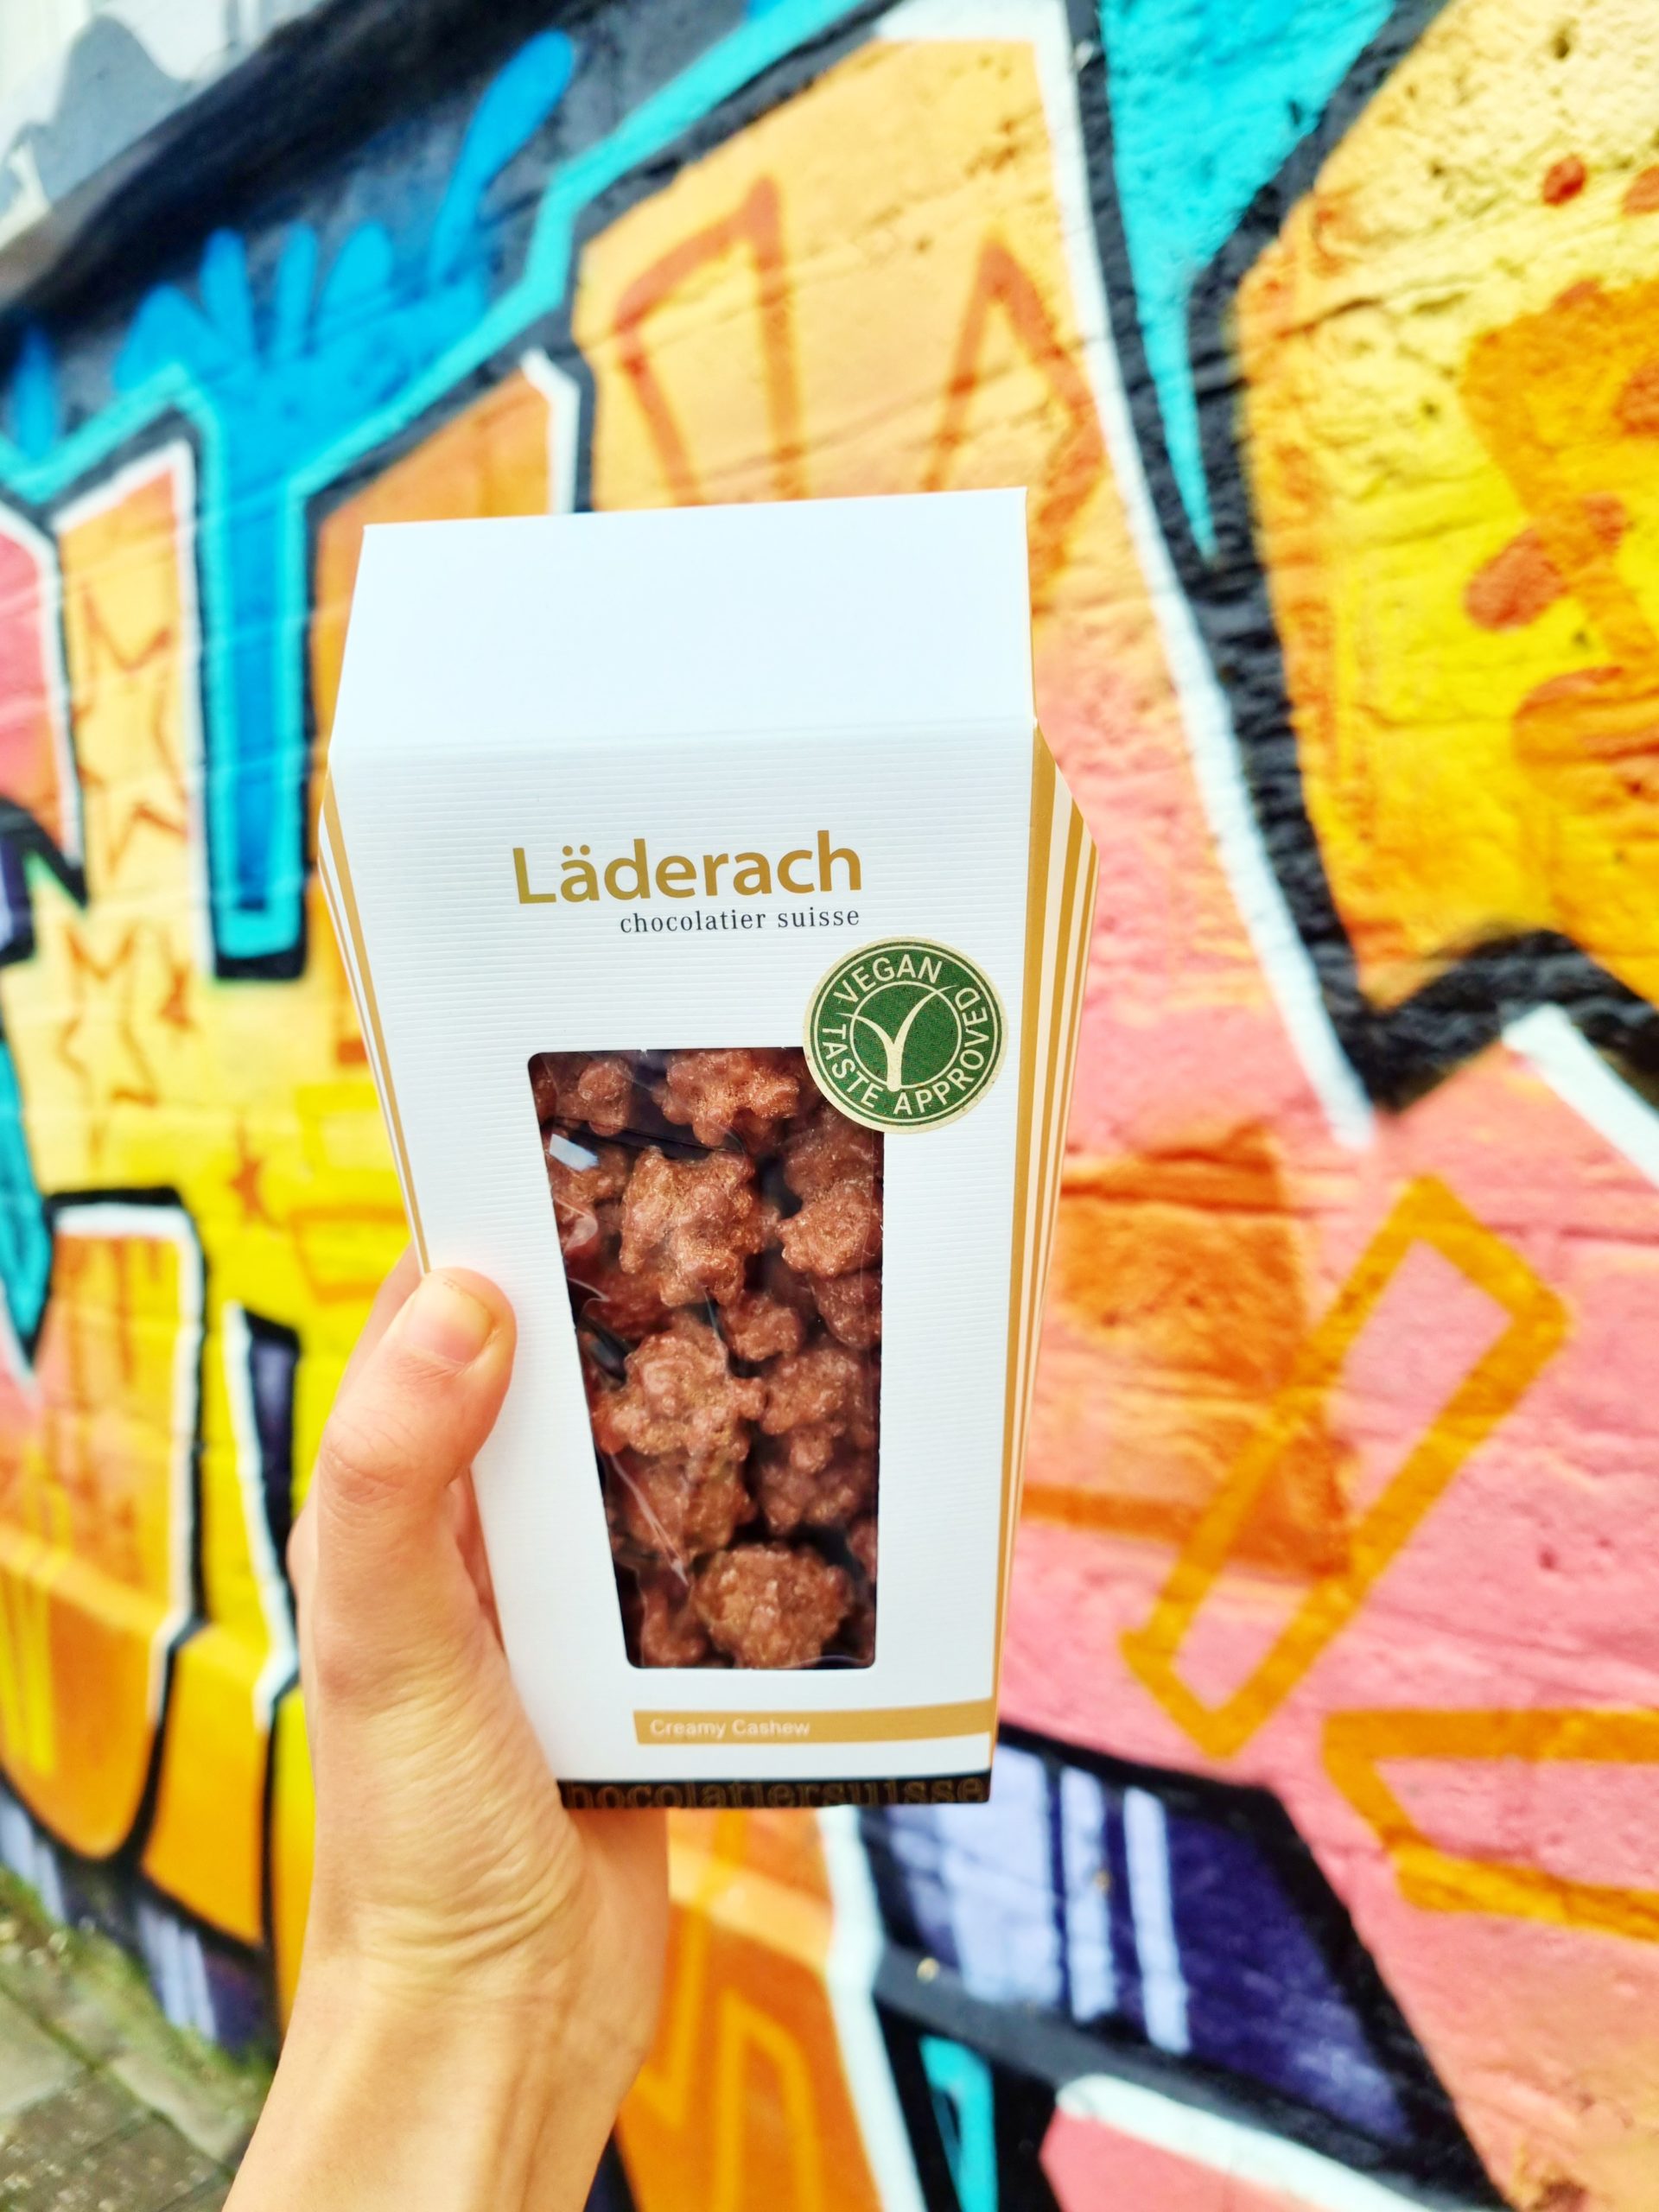 <img src="laderach.jpg" alt="laderach vegan cashew popcorn"/> 